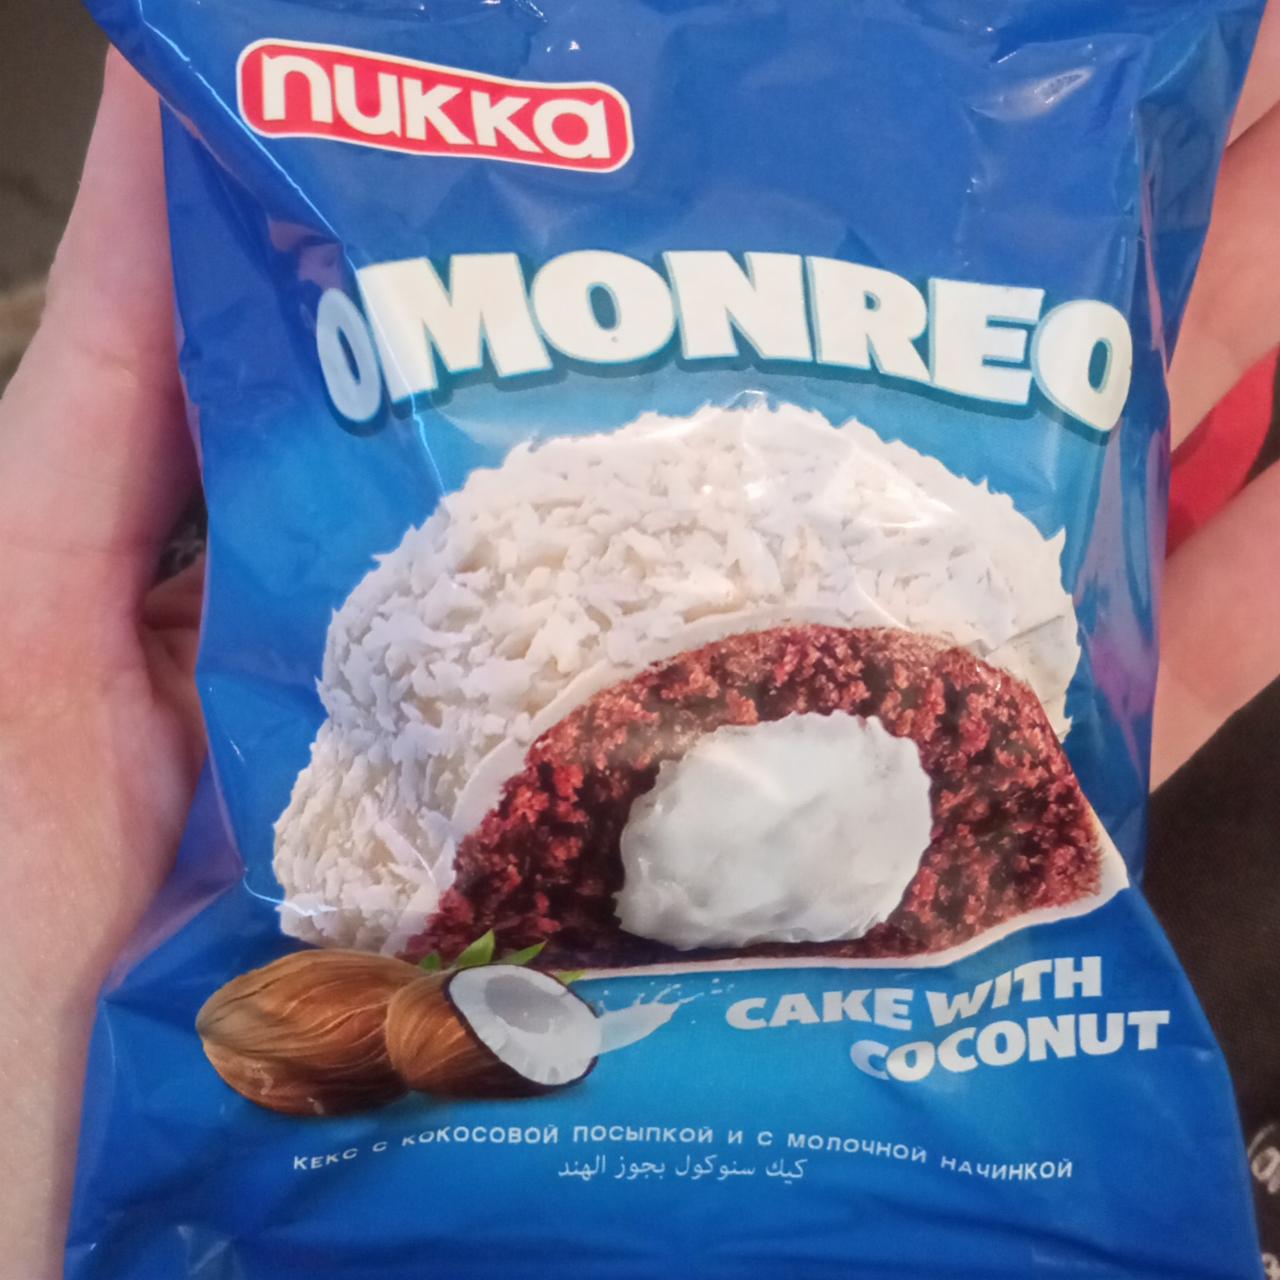 Фото - Пирожное с кокосом Оmonreo Nukka